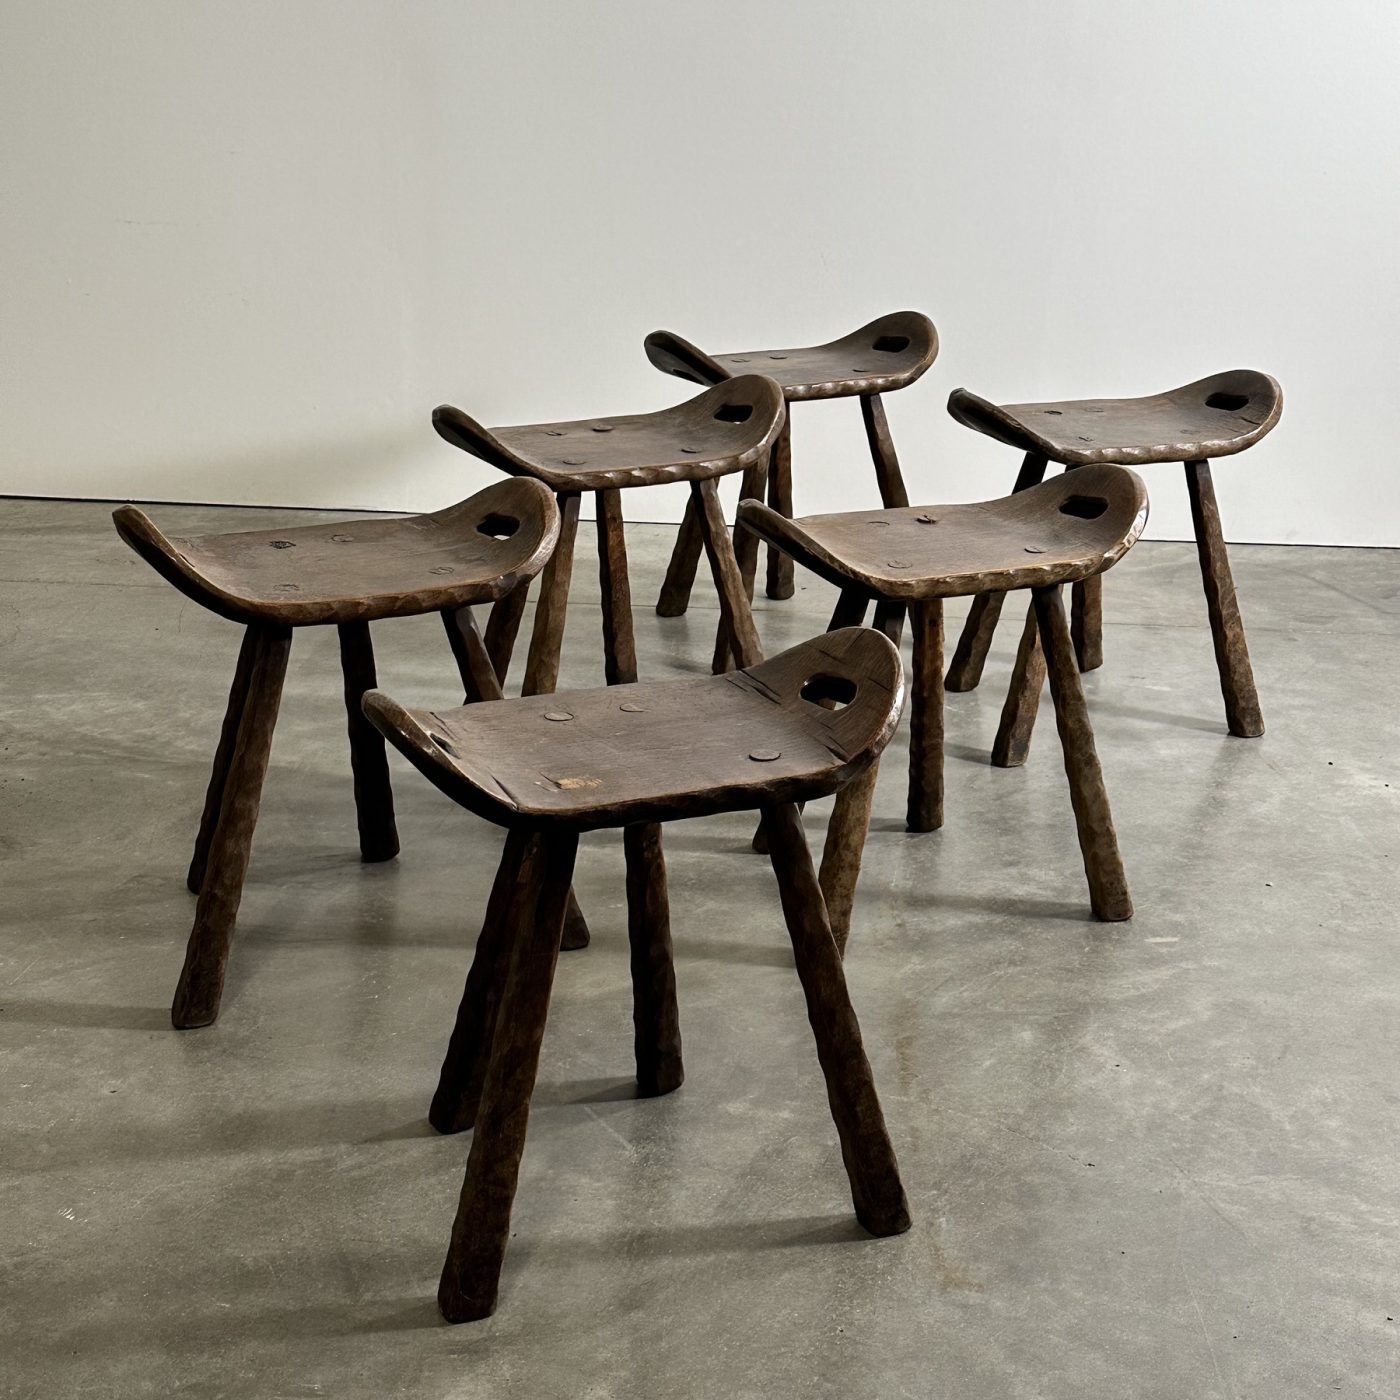 objet-vagabond-wooden-stools0005